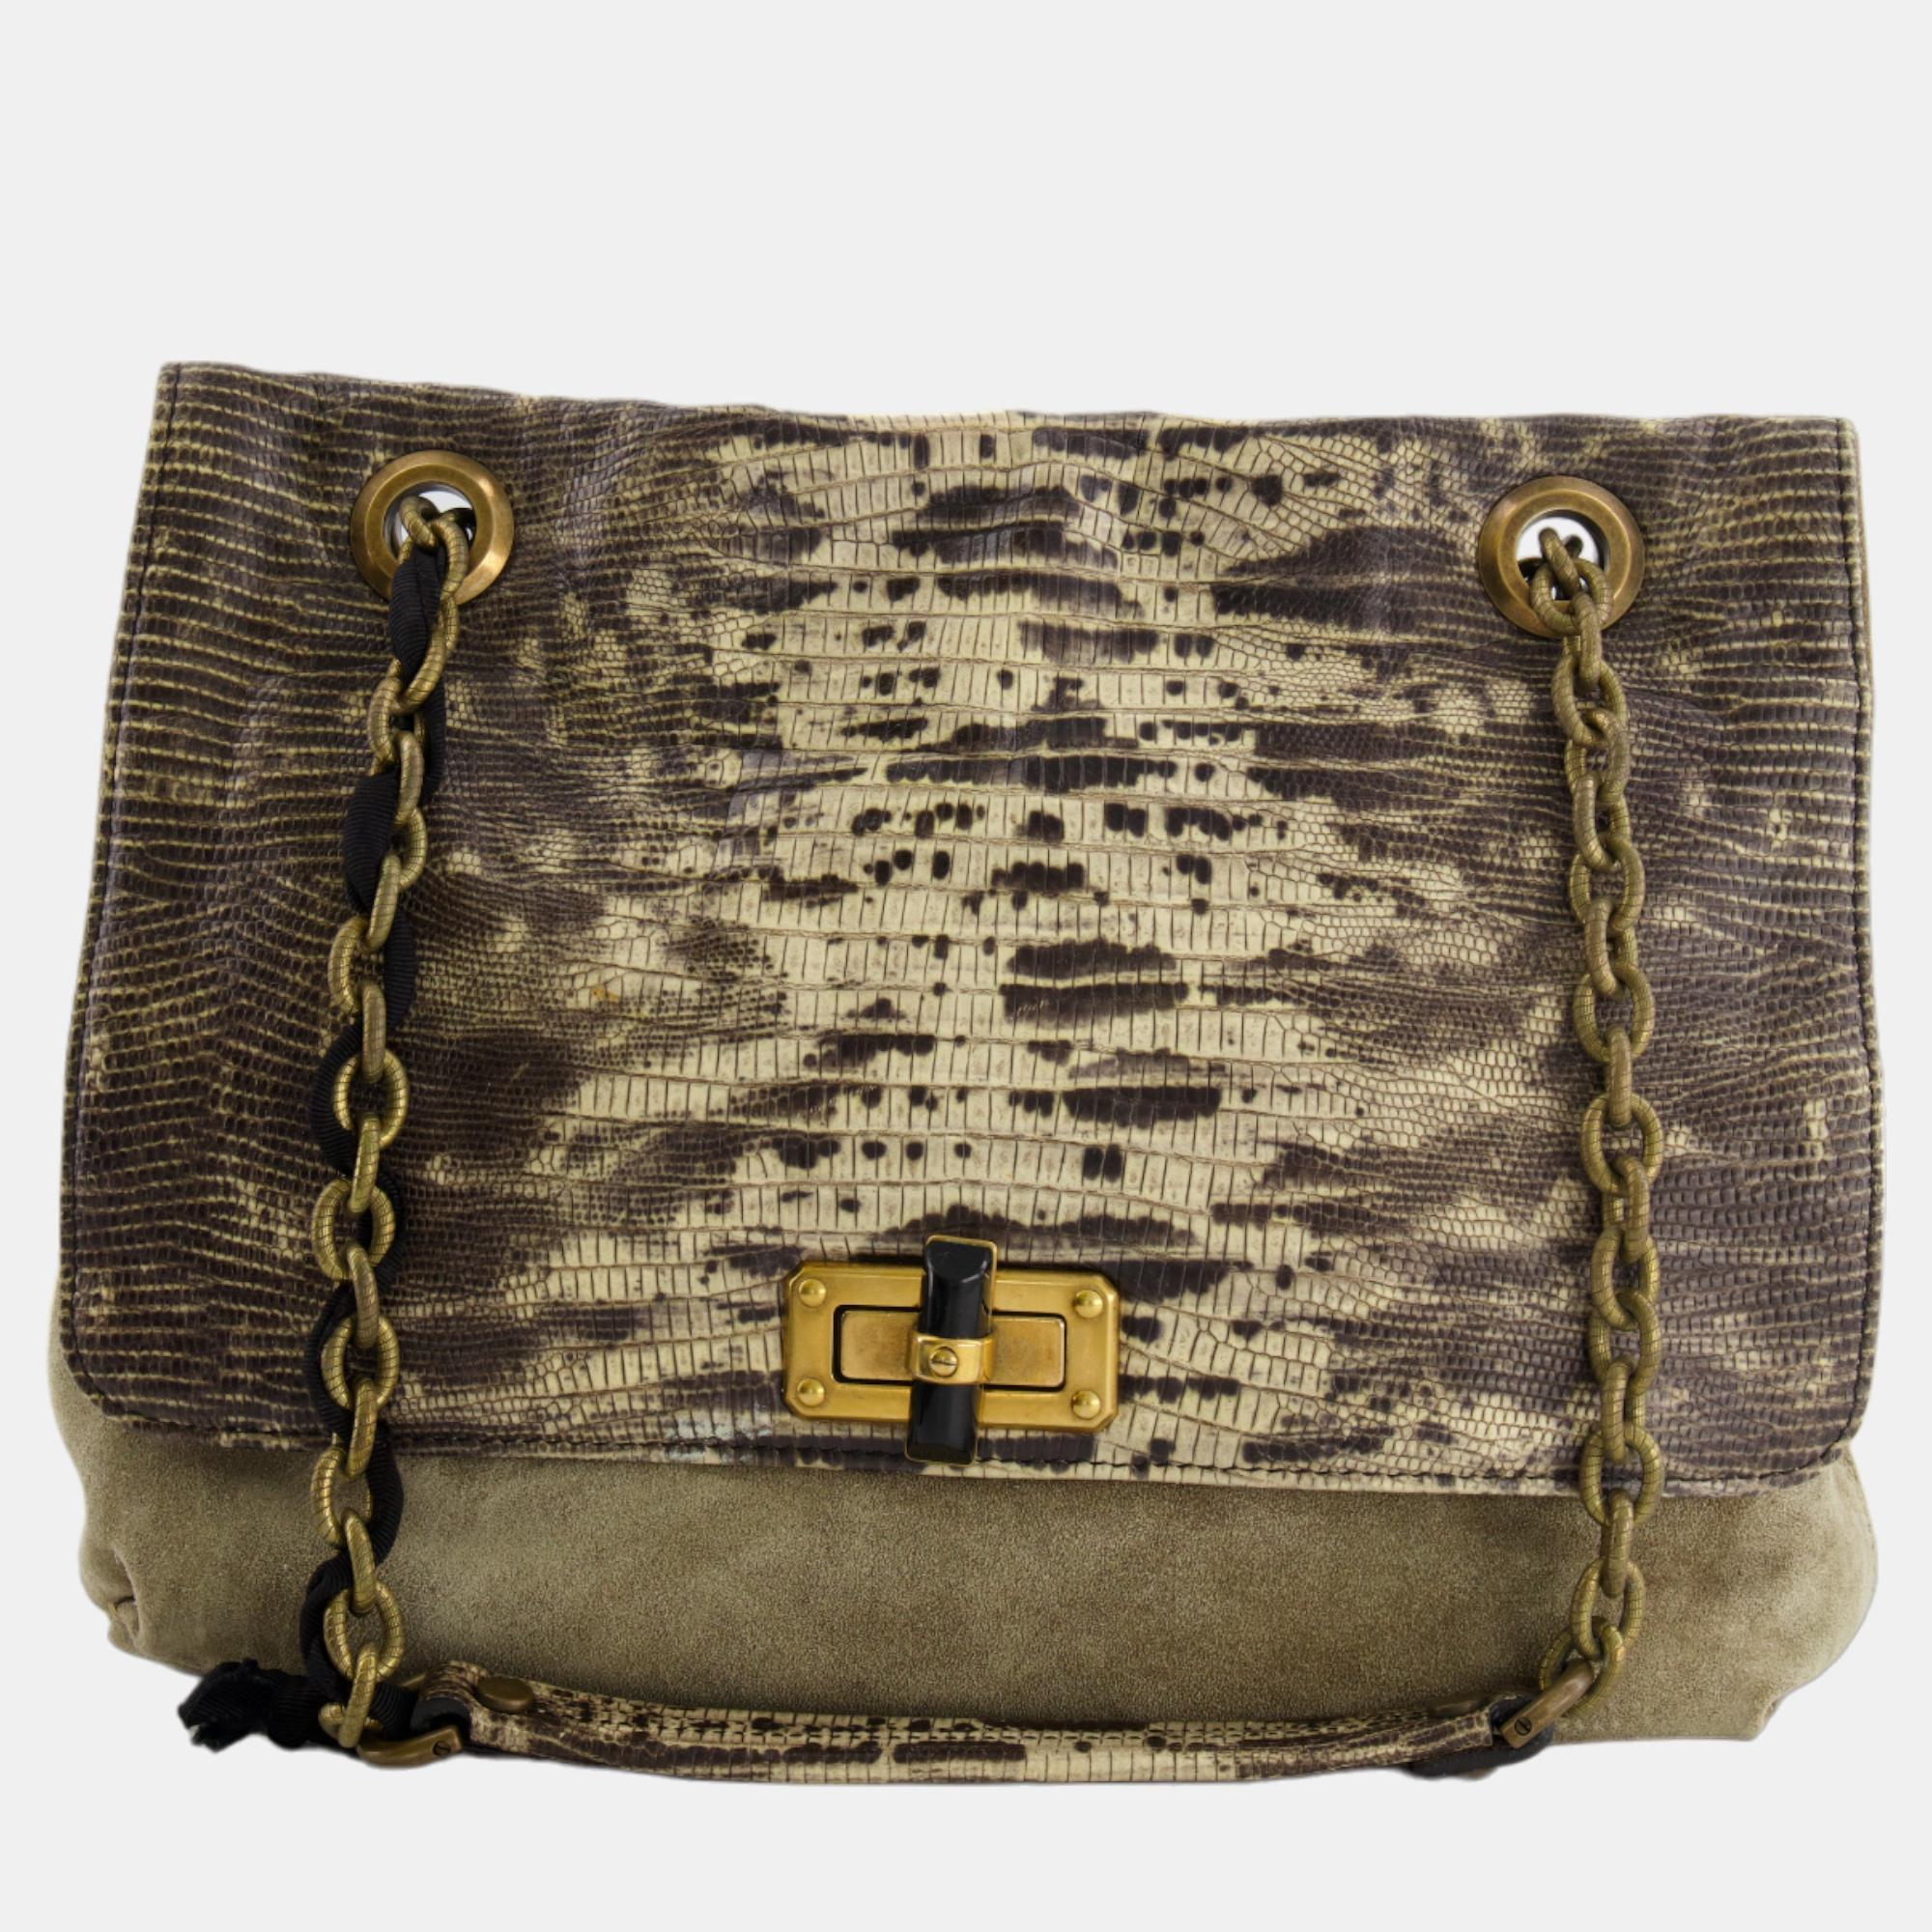 Lanvin beige snakeskin embossed shoulder bag with gold hardware